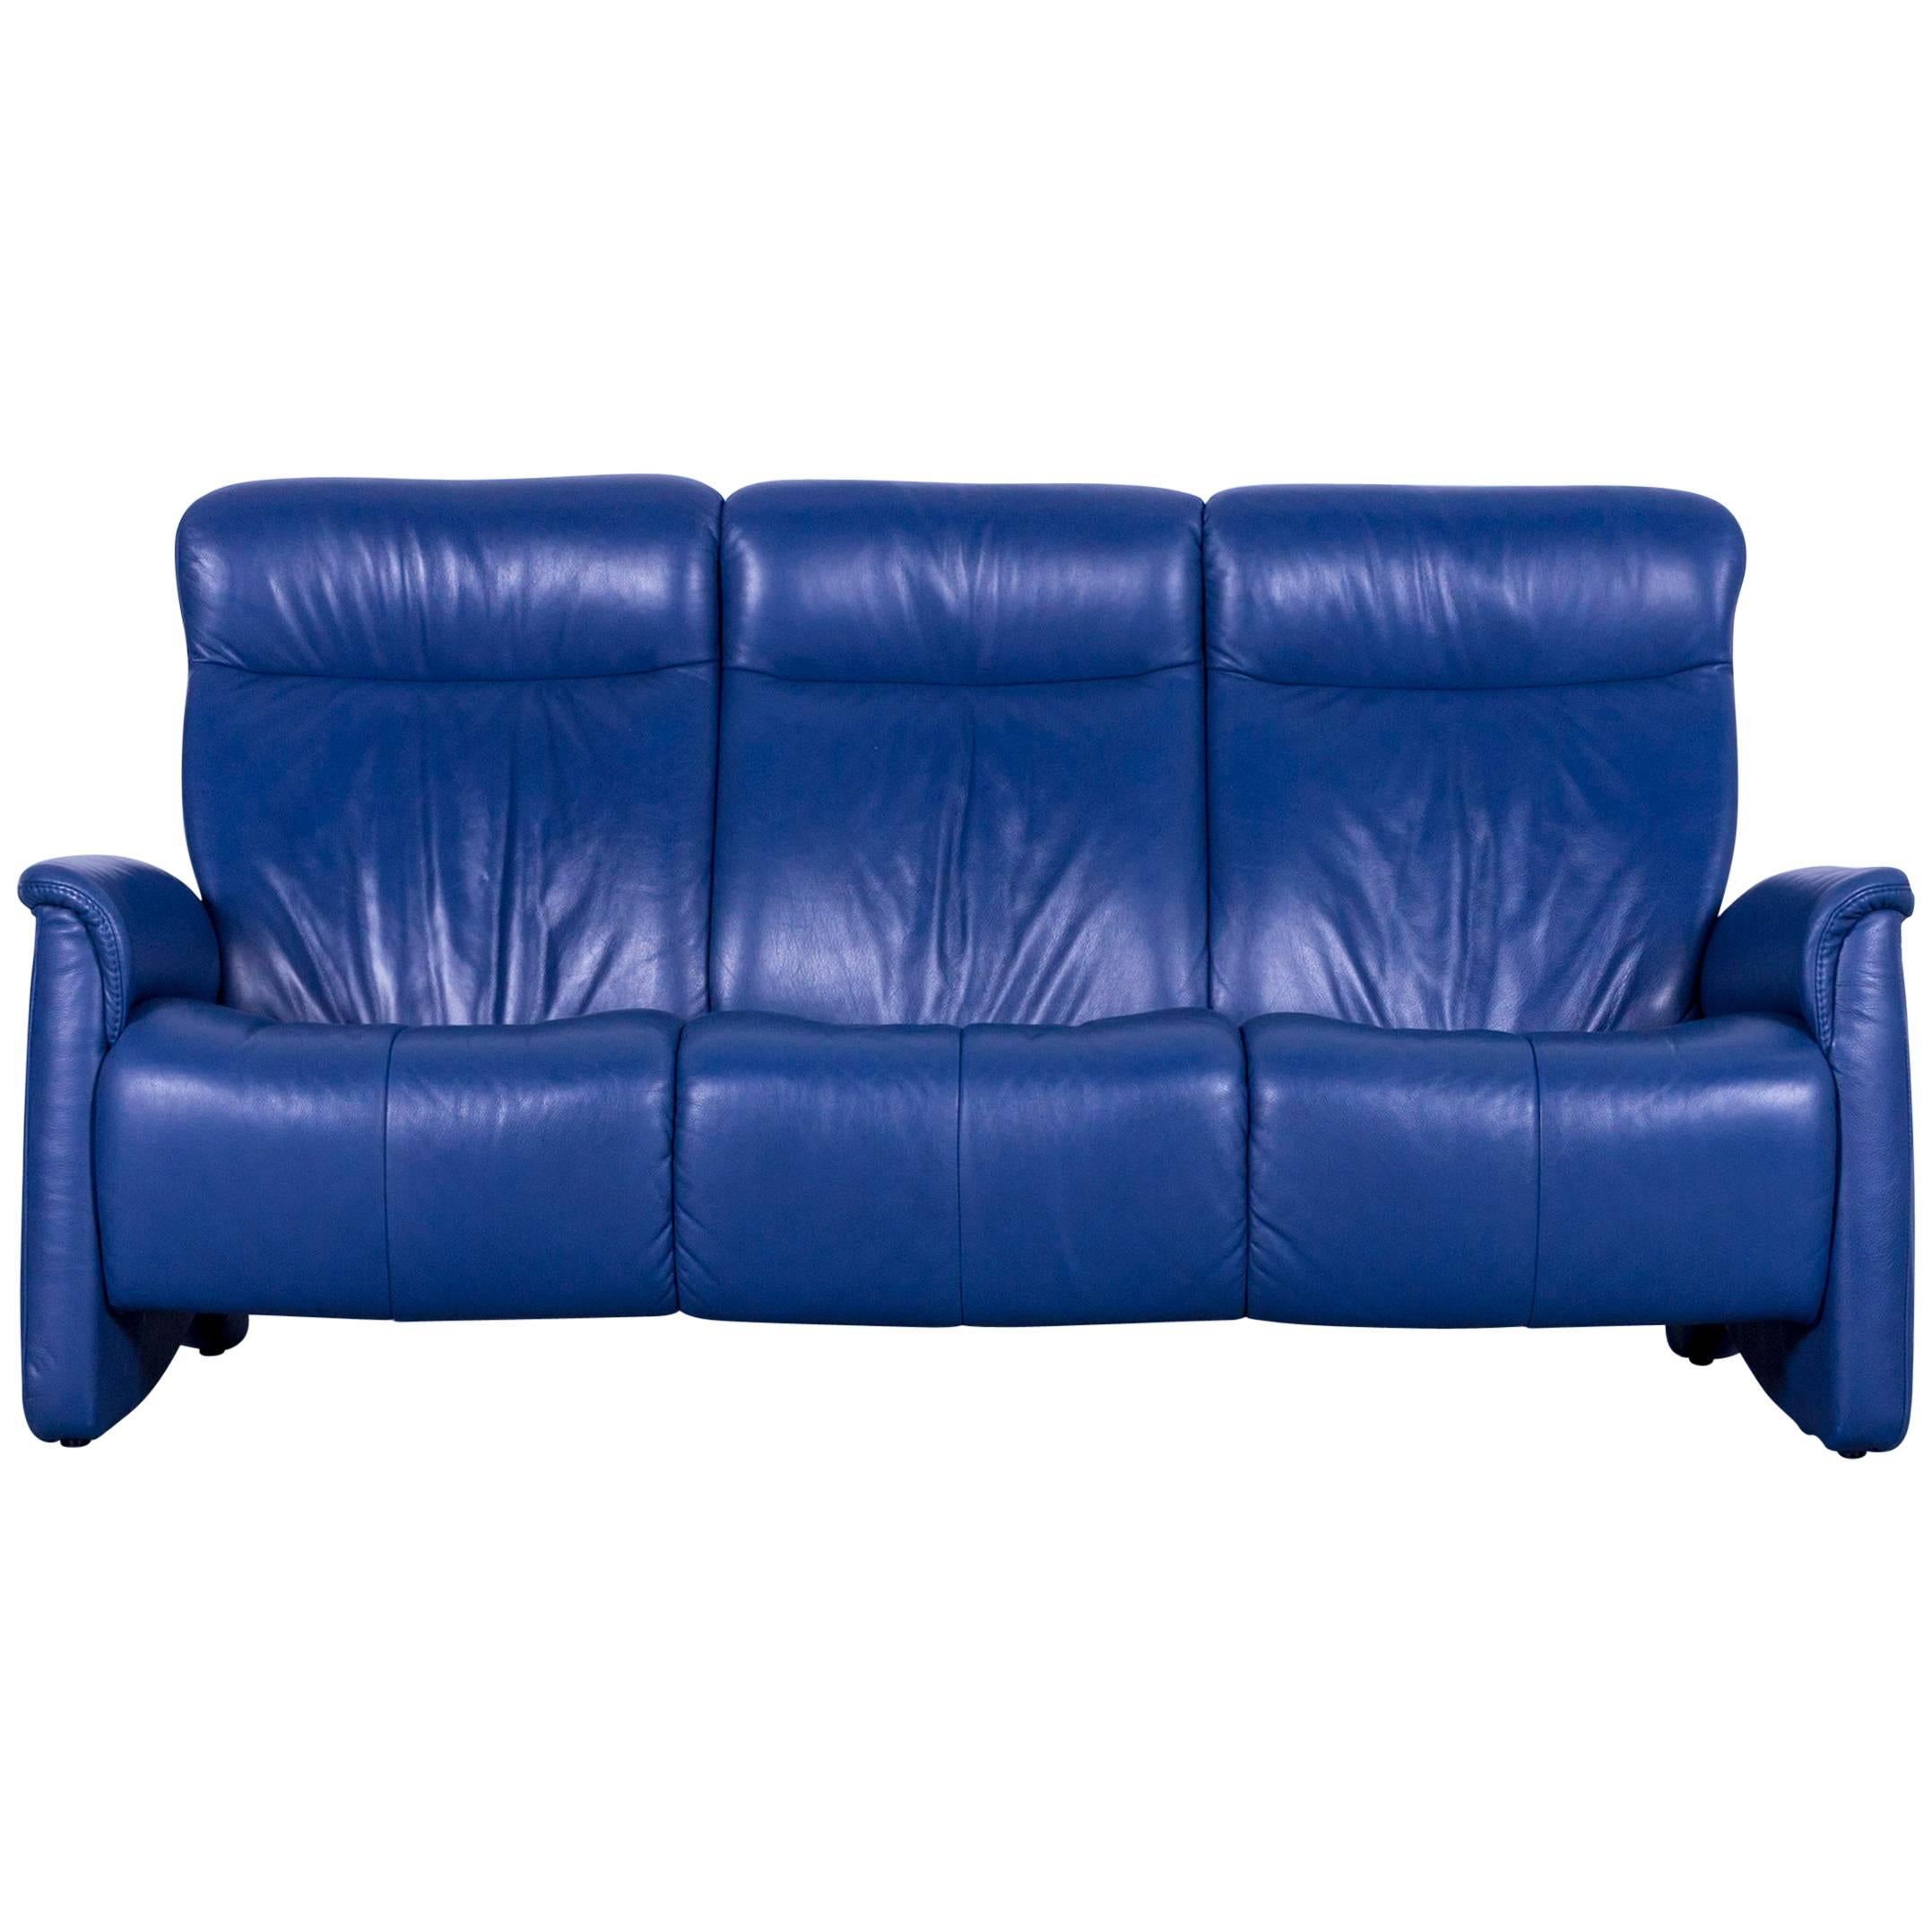 Himolla Leather Sofa Blue Three-Seat